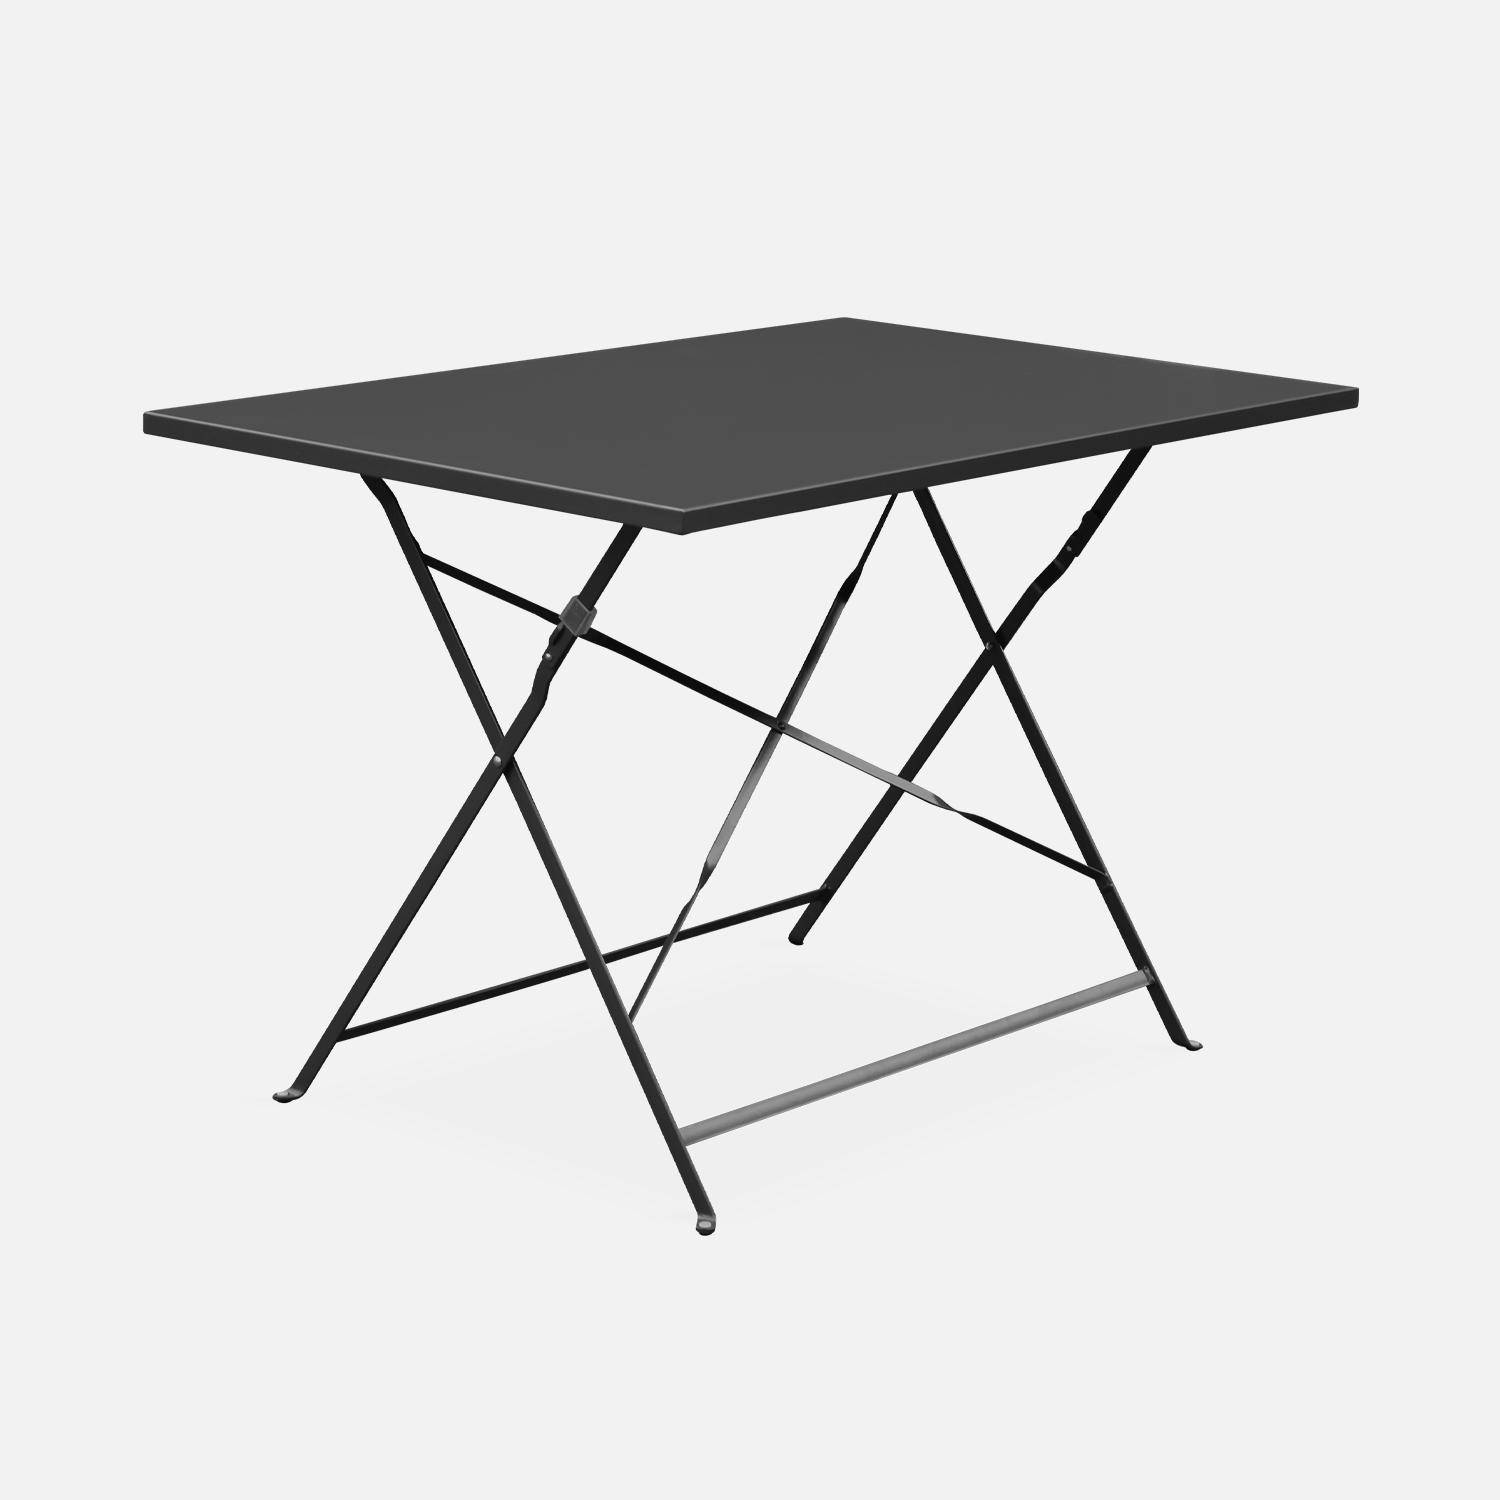 Emilia - Bistro tuintafel opvouwbaar - Rechthoekige tafel 110x70cm van staal met thermolak - Antraciet  Photo3